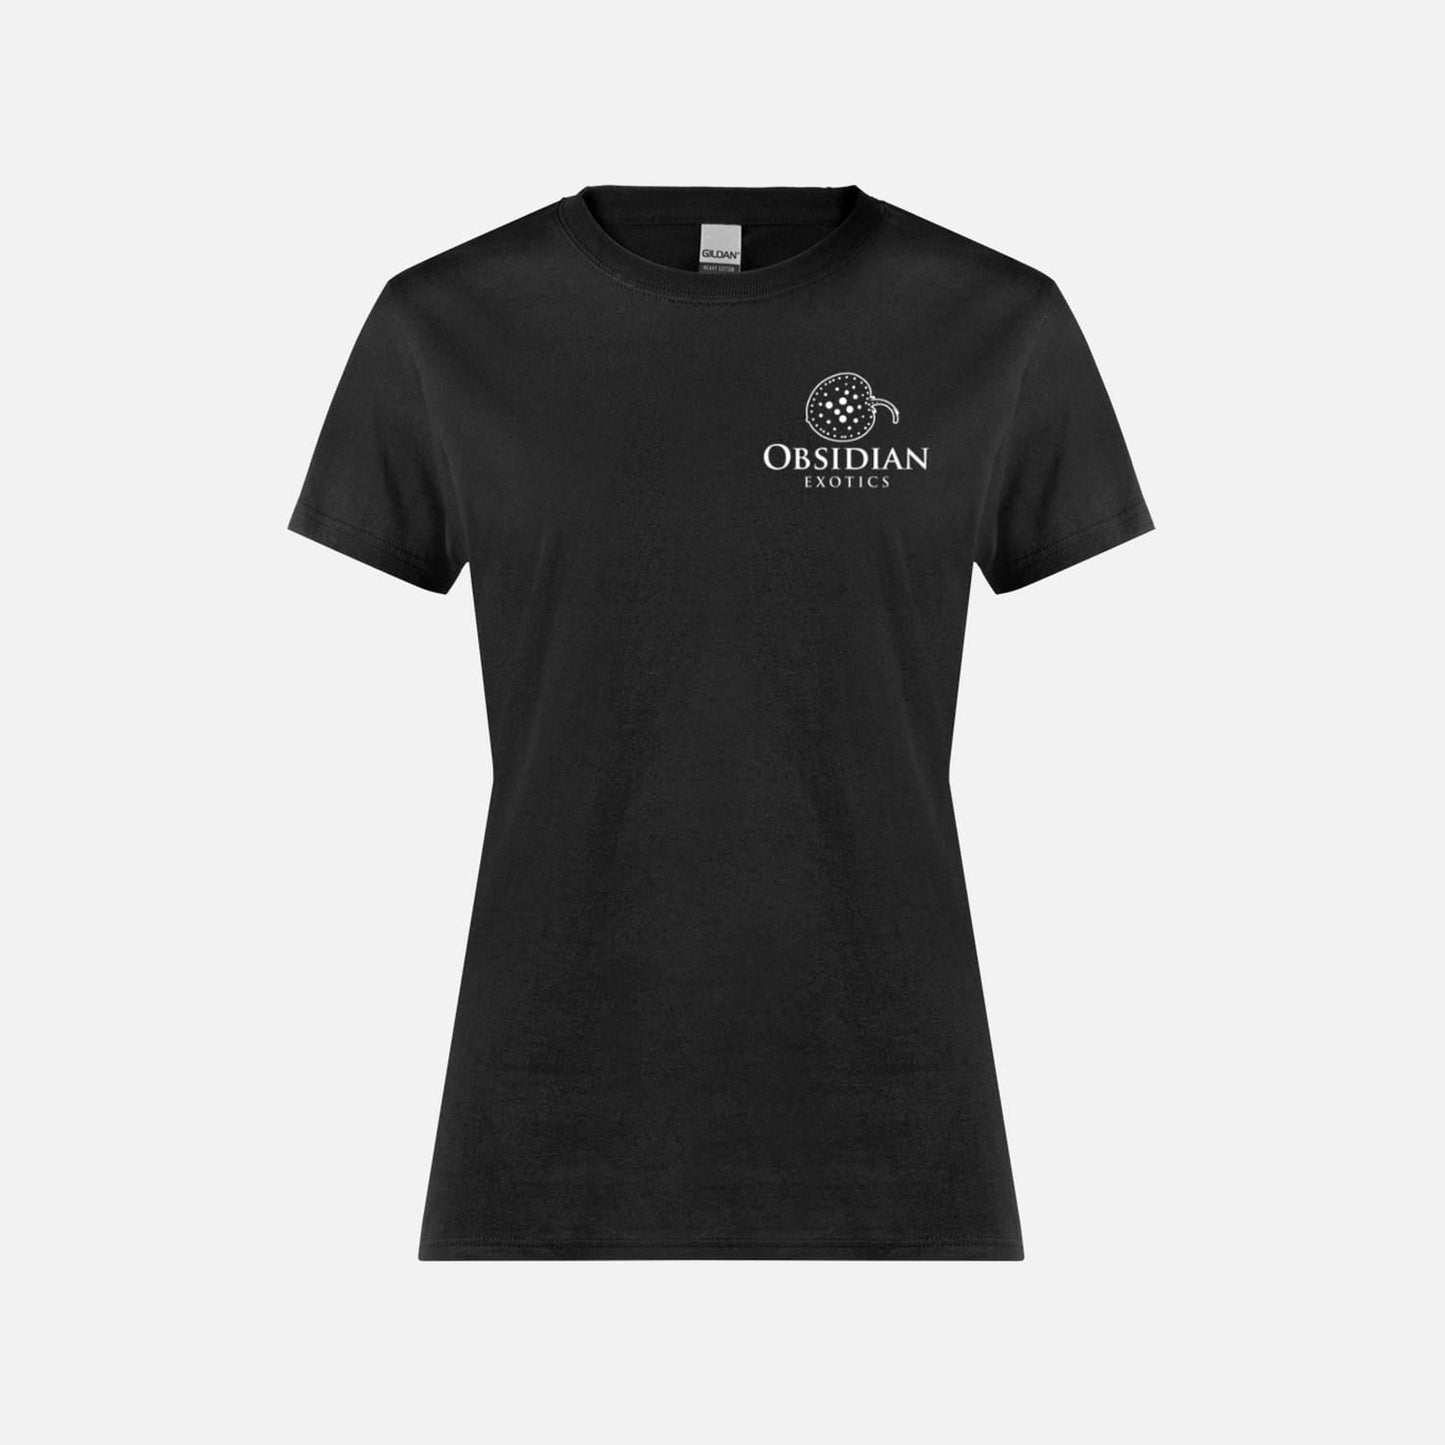 Obsidian Exotics T-Shirt - Womens - Obsidian Aquatics